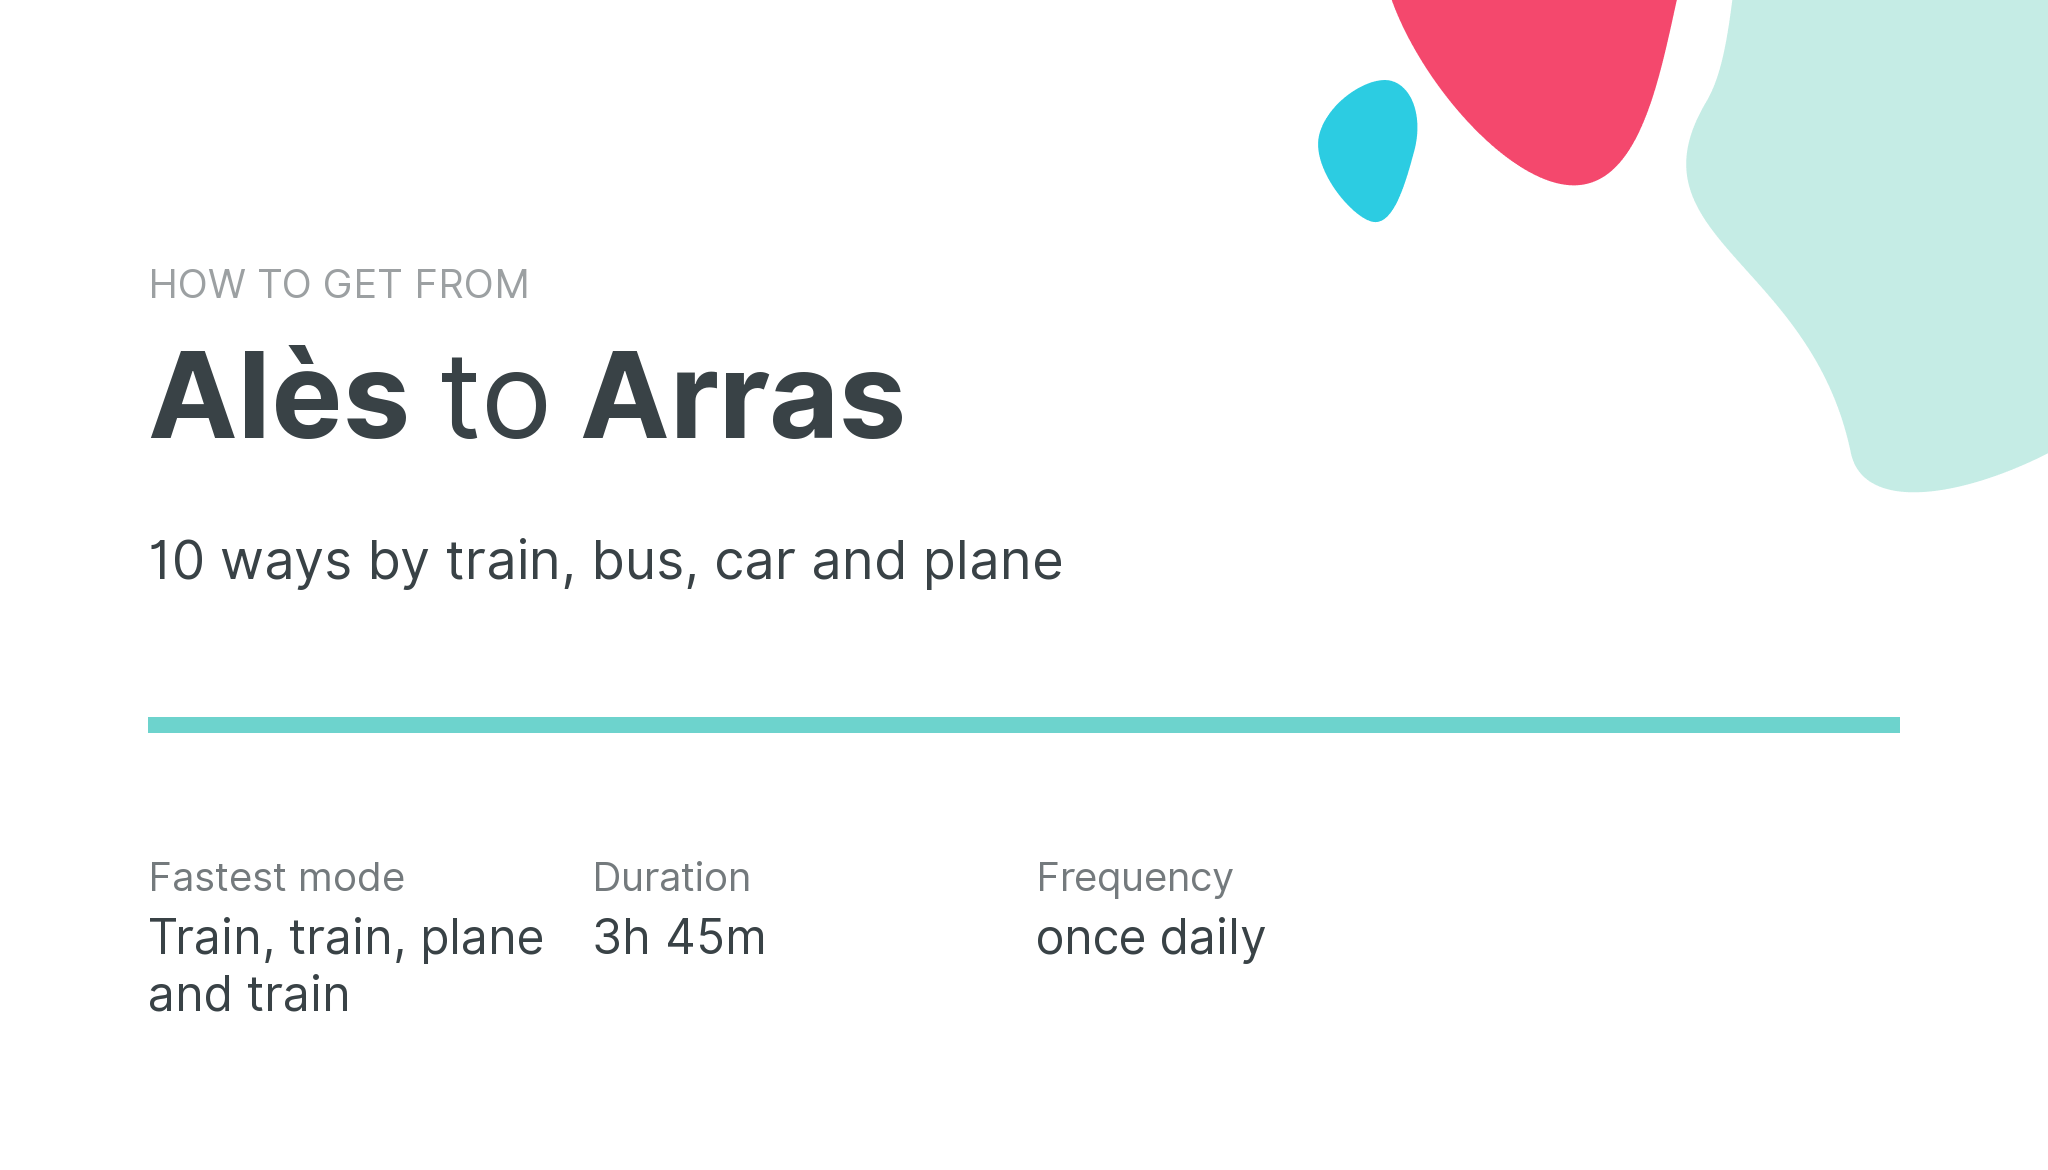 How do I get from Alès to Arras